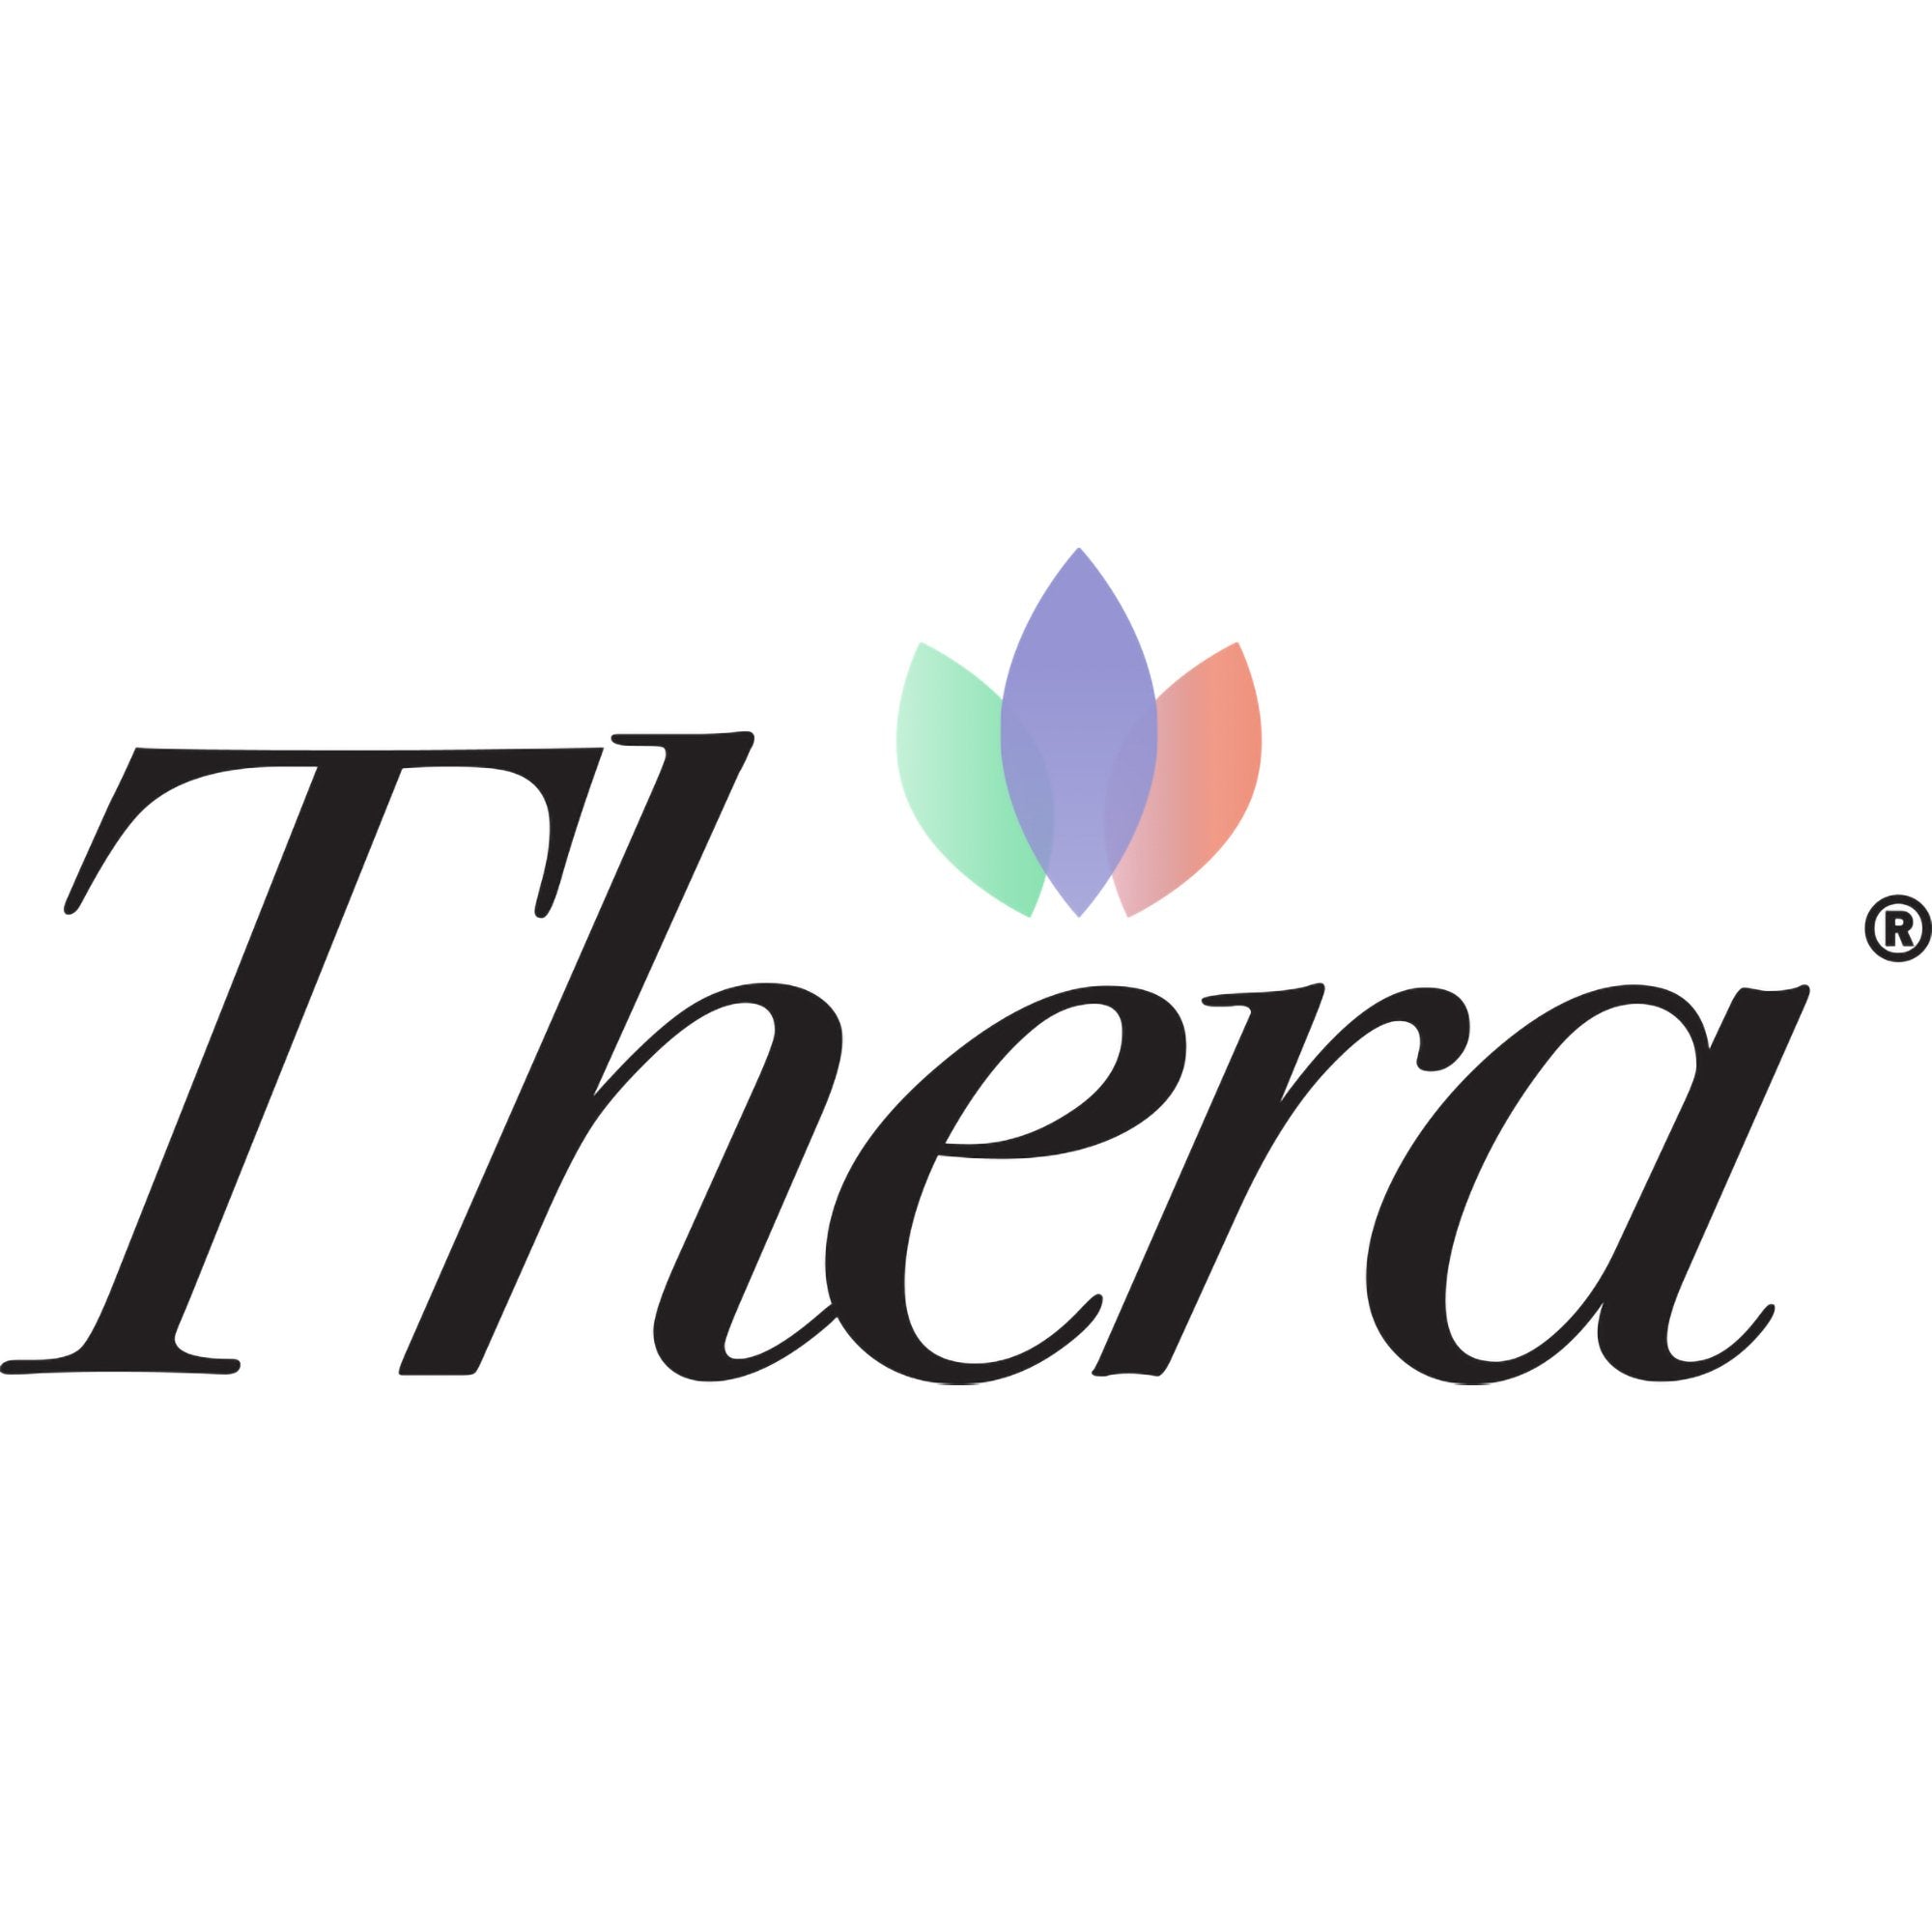 Skin Protectant Thera Dimethicone Body Shield 4 oz. Tube Scented Cream